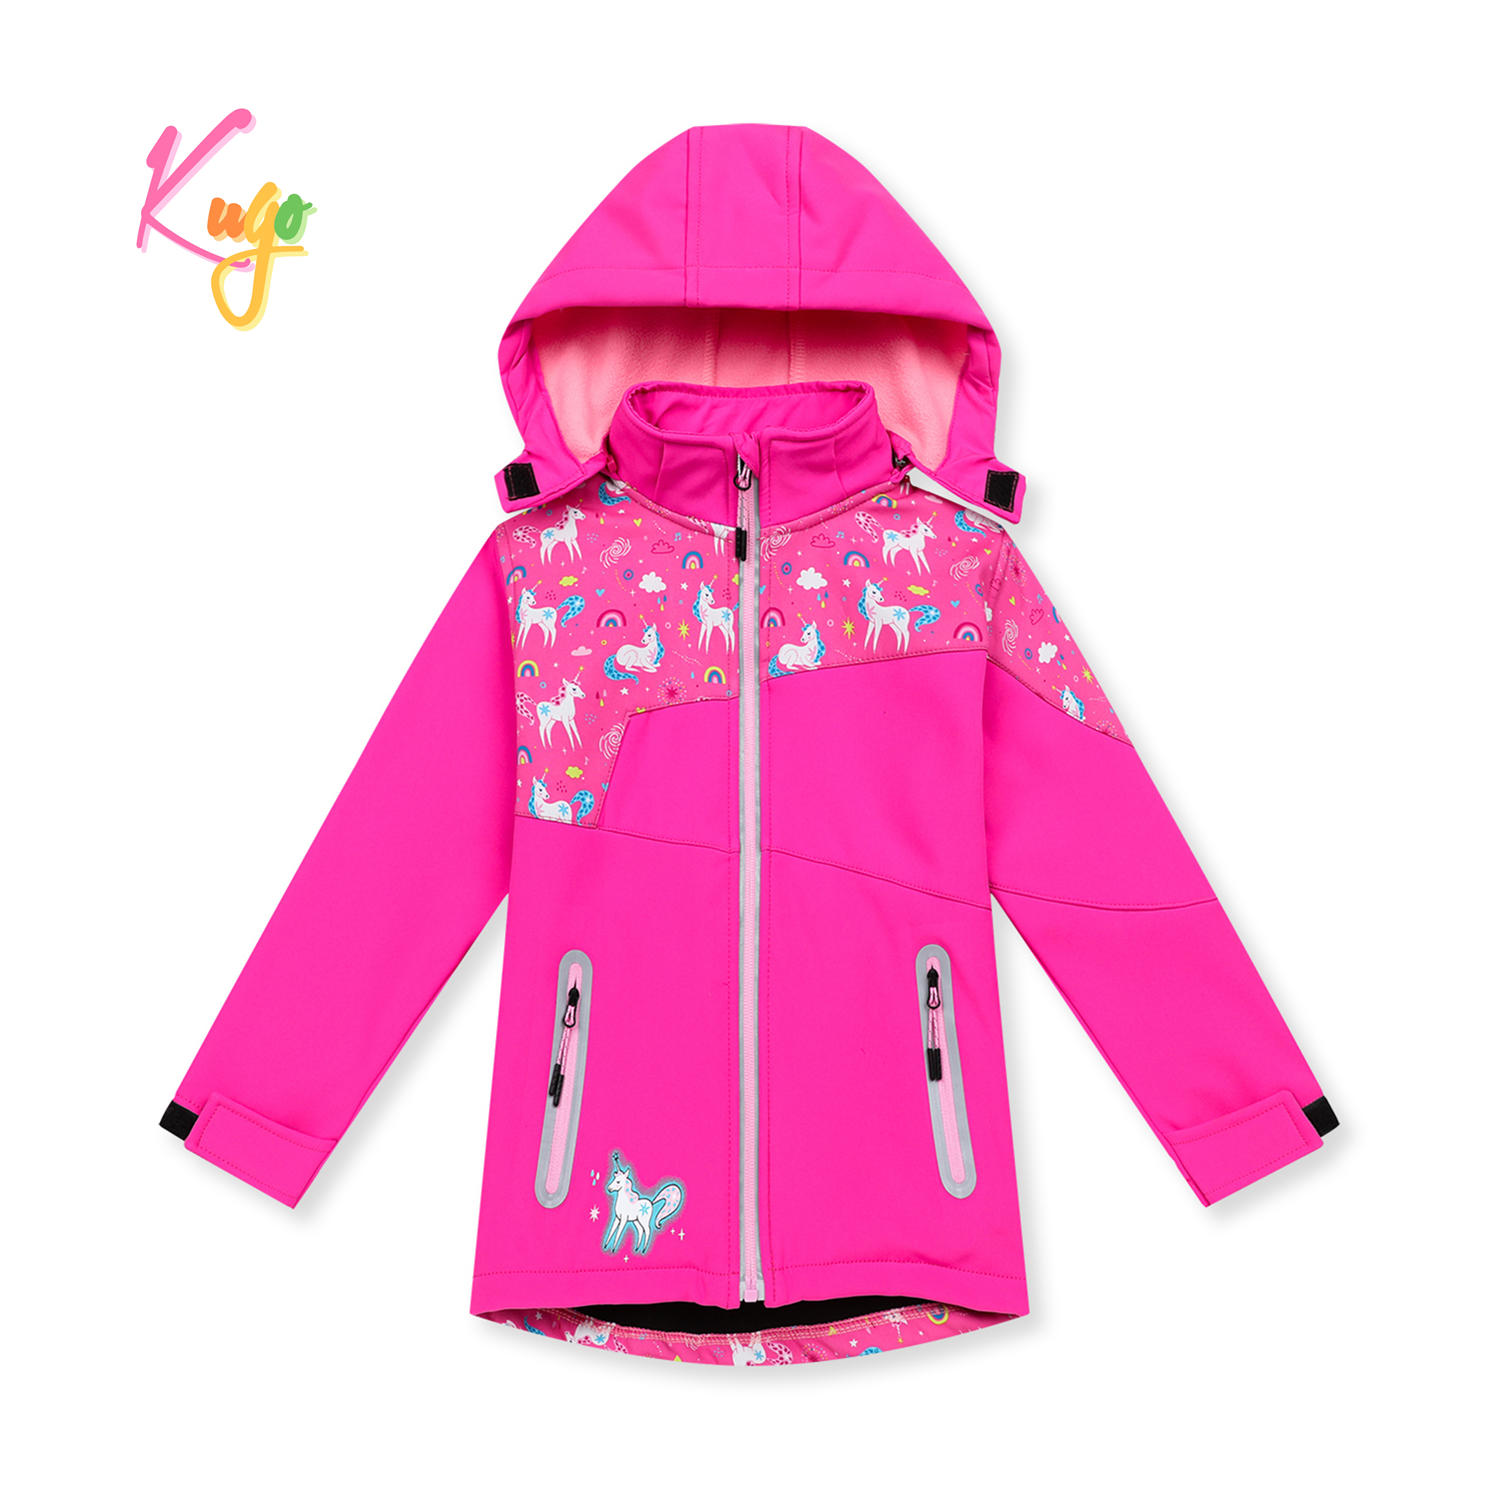 Dívčí softshellová bunda, zateplená - KUGO HK5601, růžová Barva: Růžová, Velikost: 98